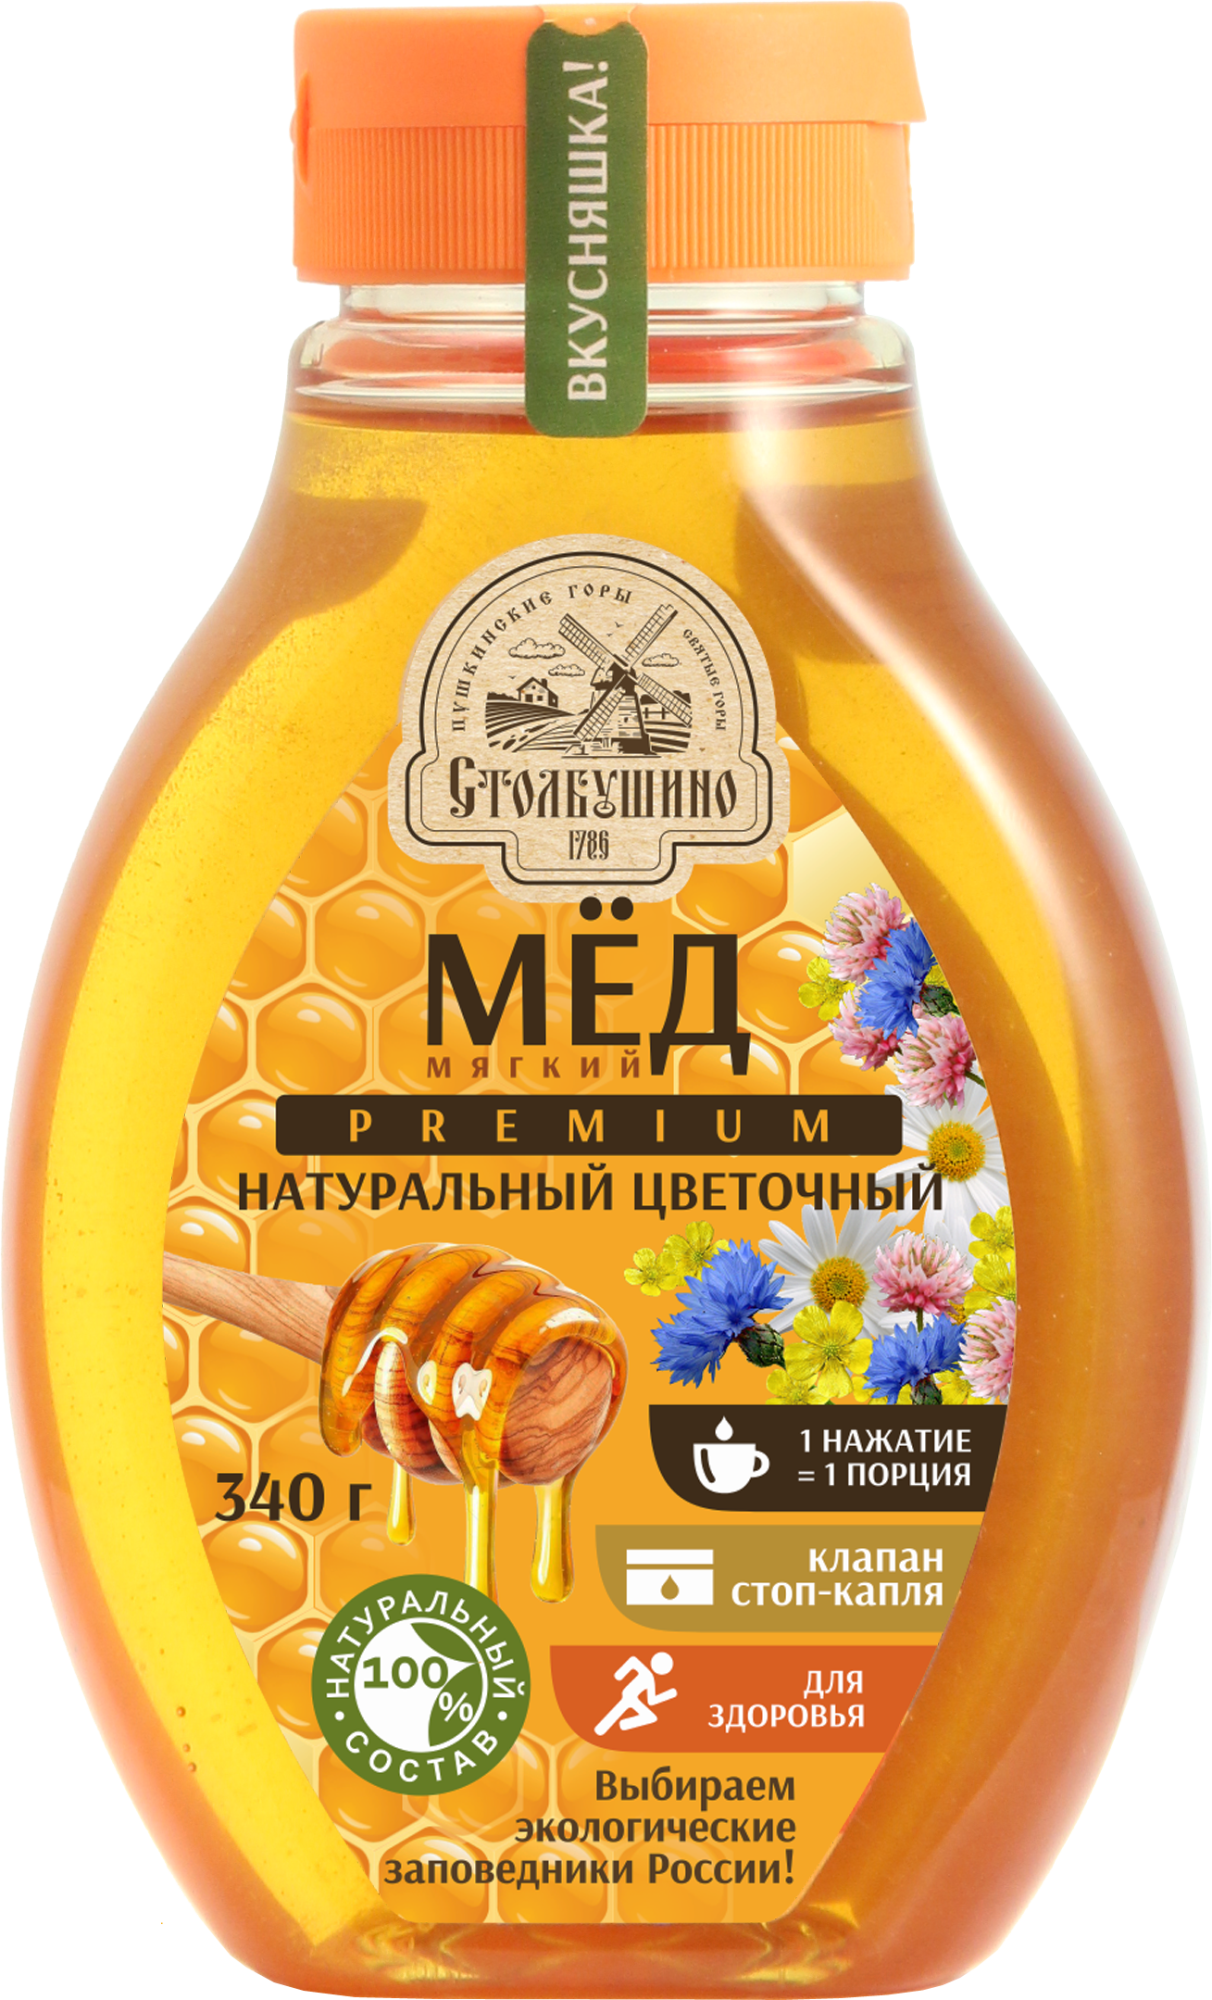 Мягкий натуральный цветочный мёд полифлерный, 340 г Крышка с клапаном дозатором  “СТОП КАПЛЯ” 1 нажатие =1 порция​